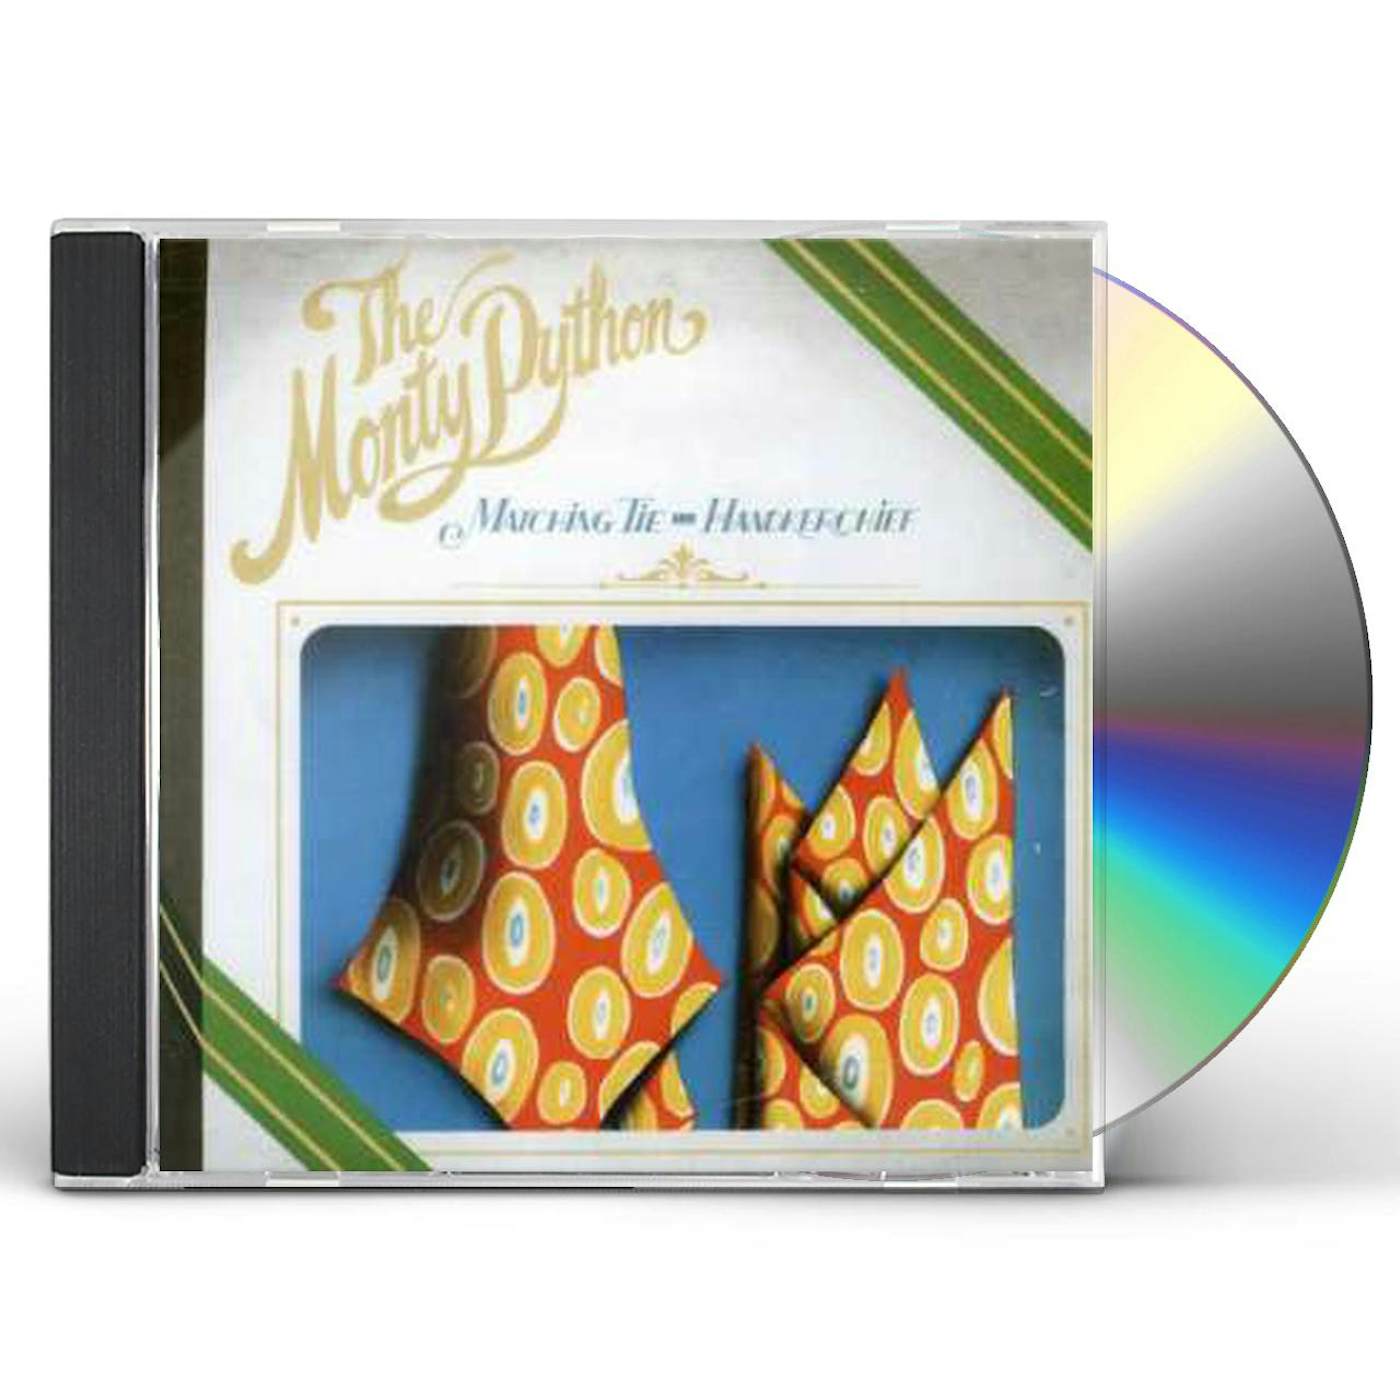 Monty Python MATCHING TIE & HANDKERCHIEF CD